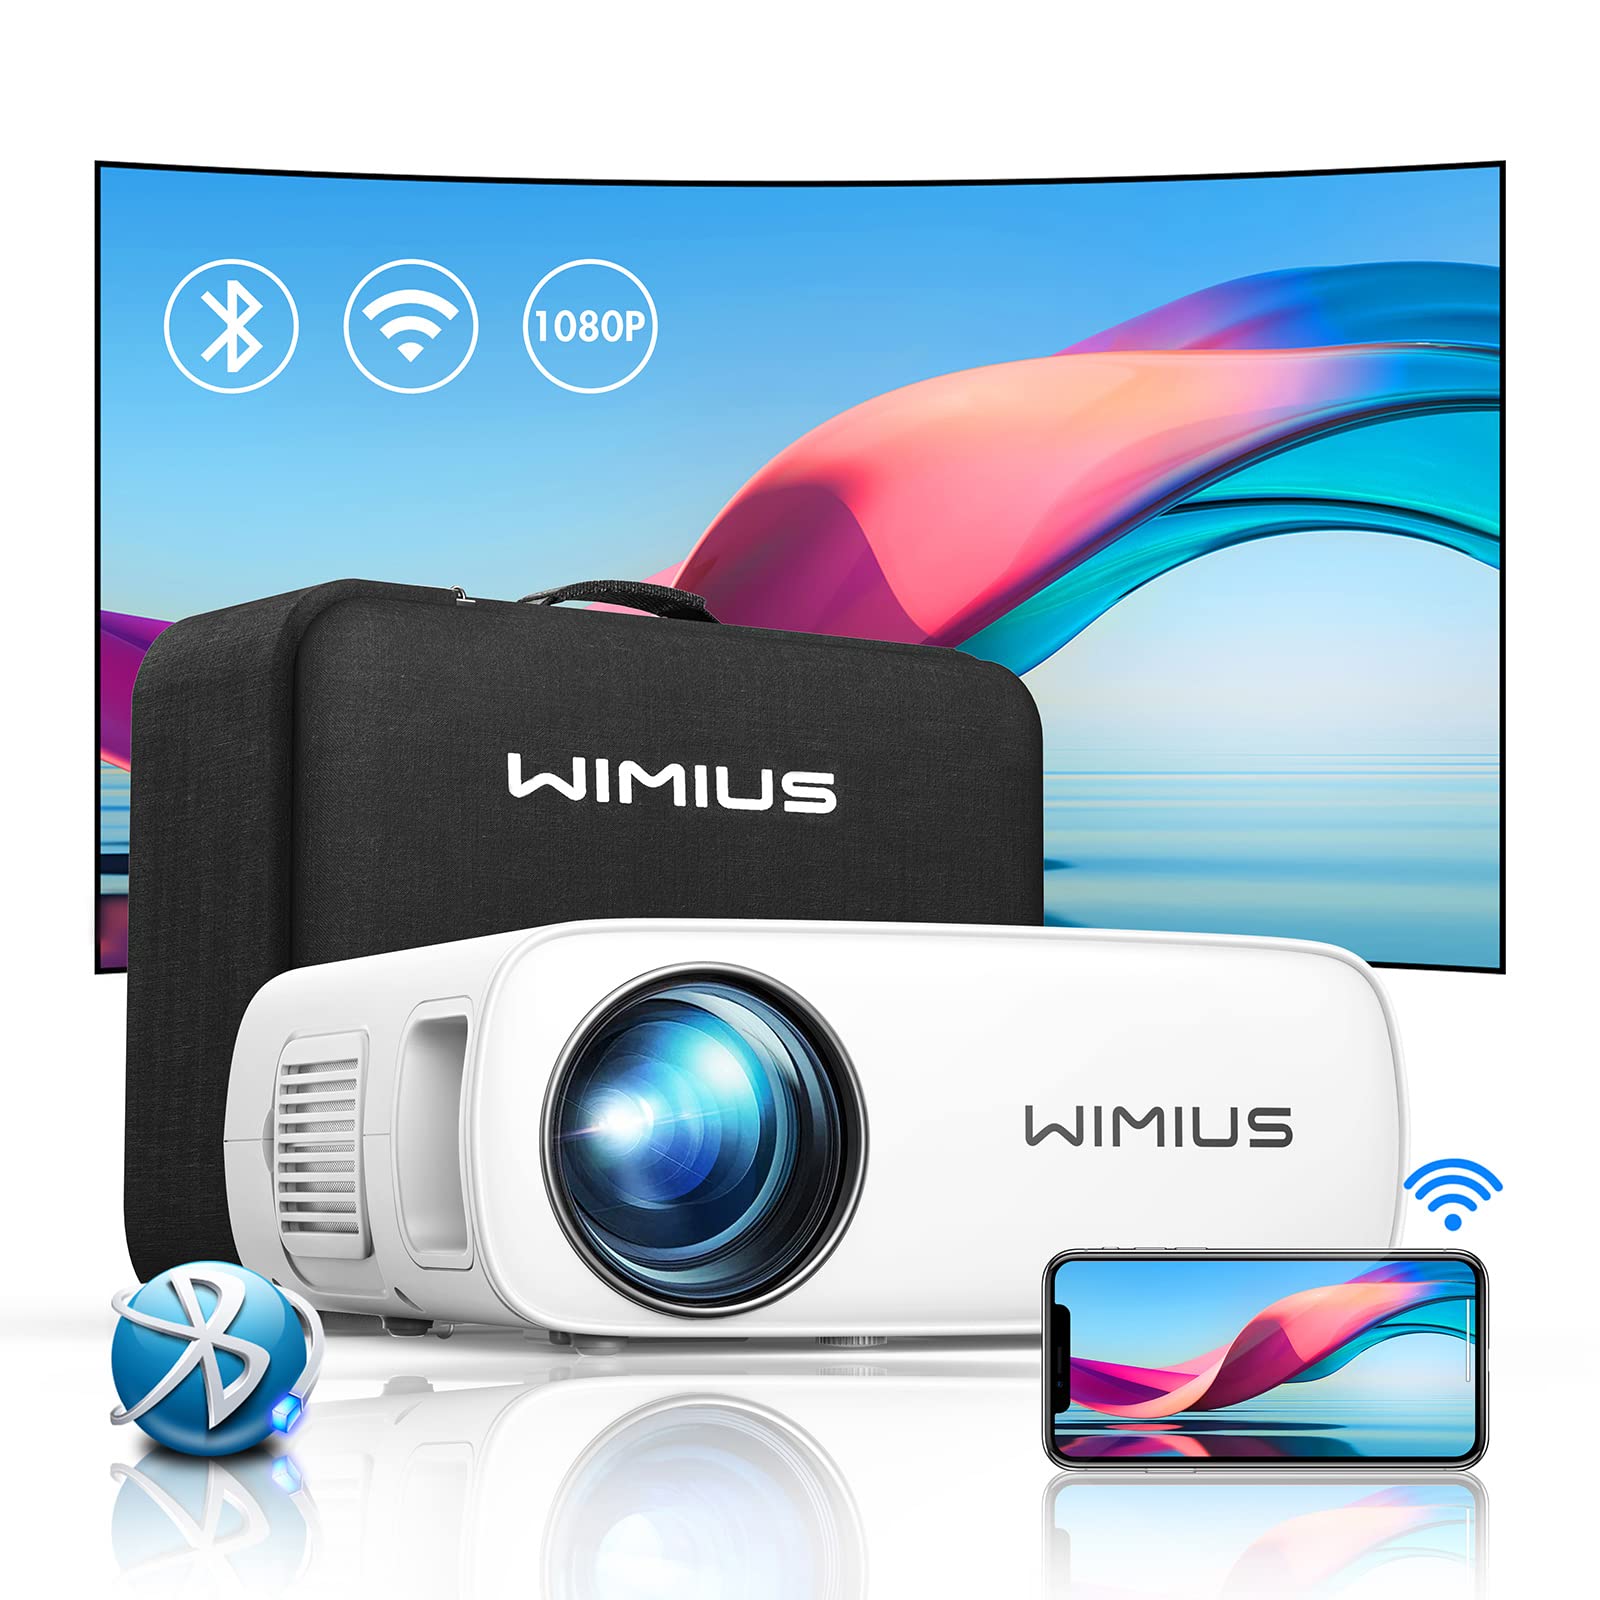 WiMiUS プロジェクター - テレビ/映像機器